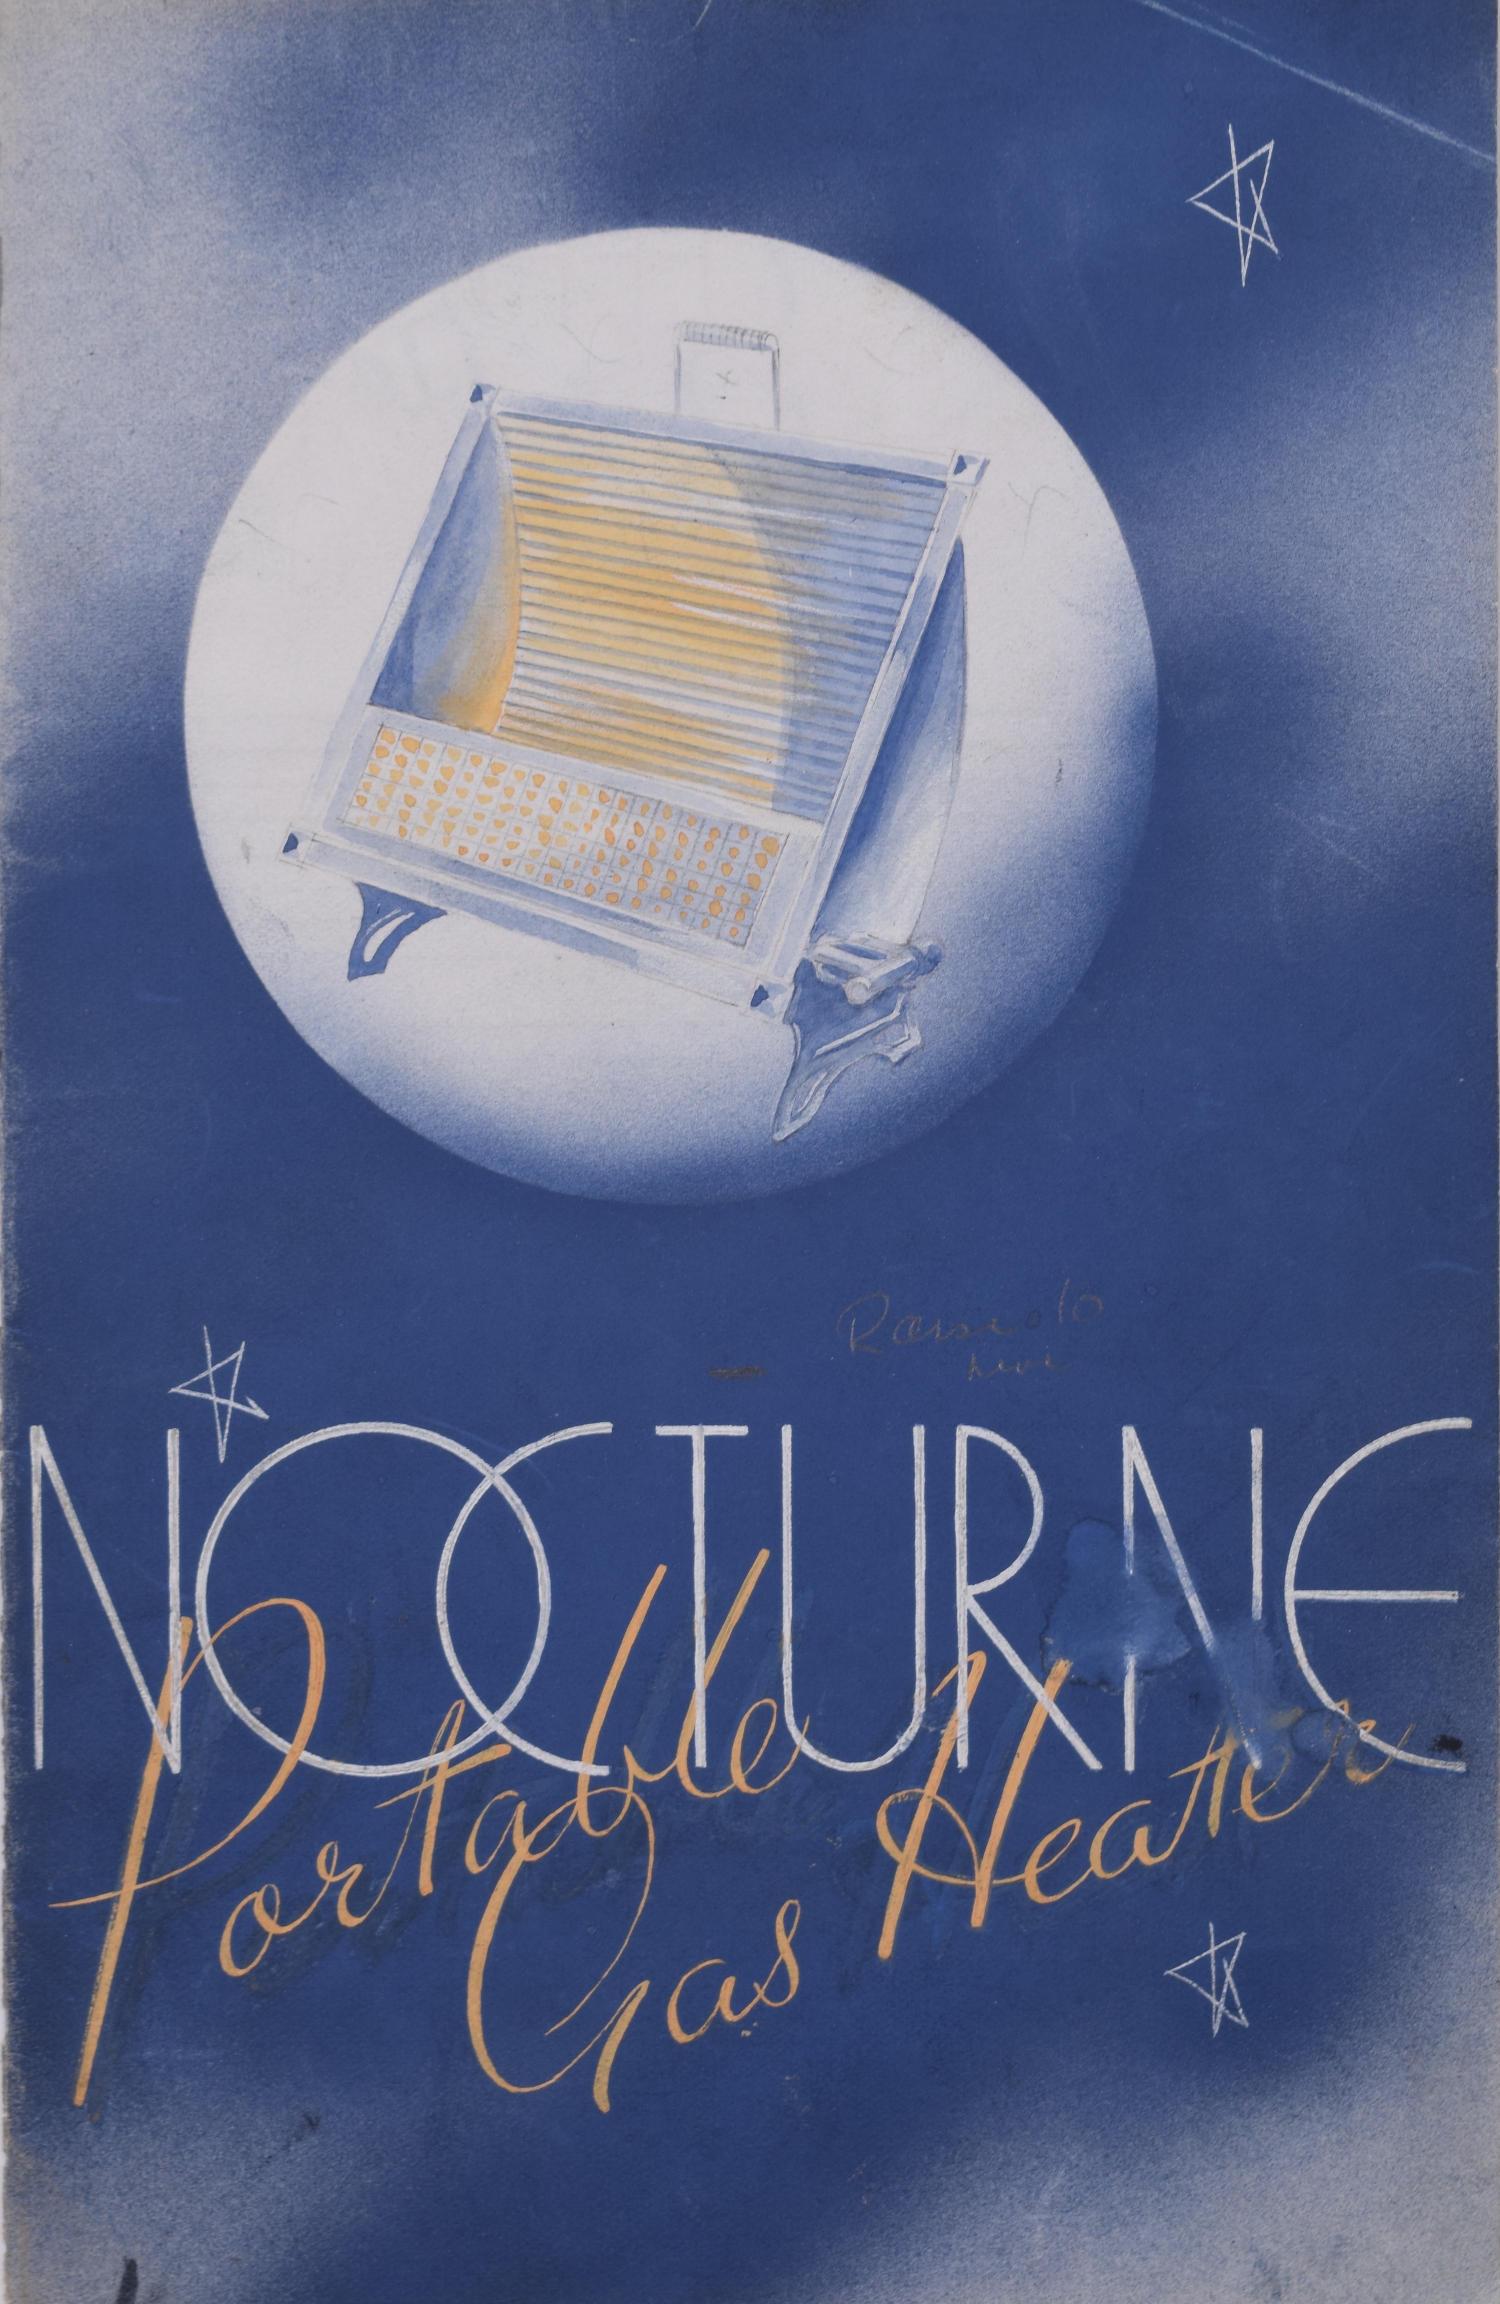 Broche de foyer à gaz portable Nocturne peinte de style Art Déco par Brownbridge